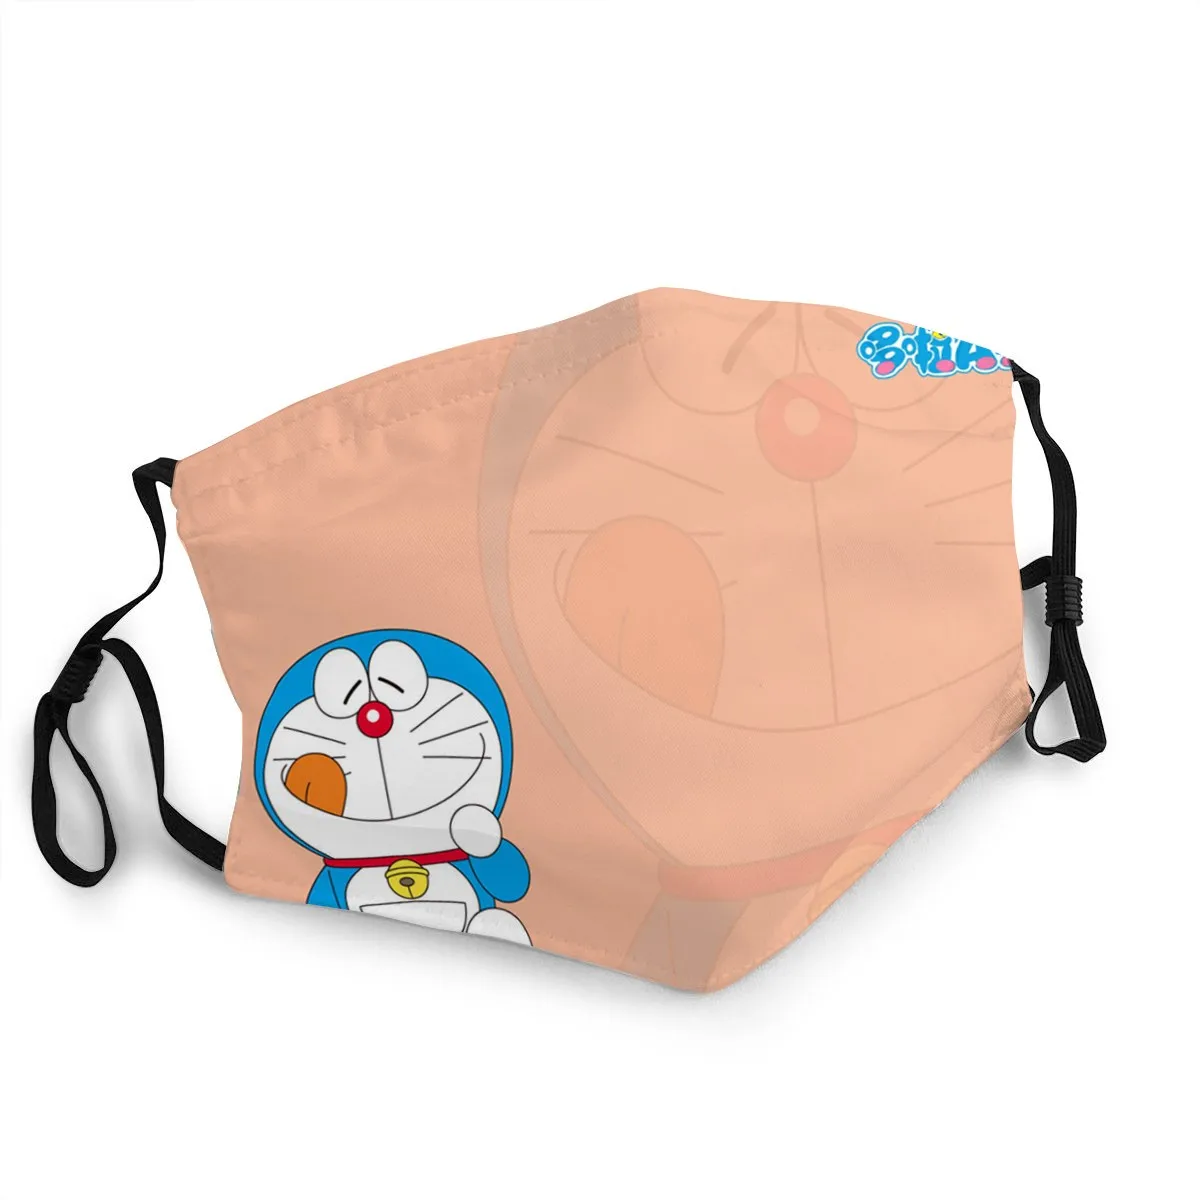 Niño/niña Doraemon Tela de la Máscara de la Cara Con las Pm2.5 Lavable De Almacenamiento De Protección Suave Masque Doraemon Pegatina Juguetes 5